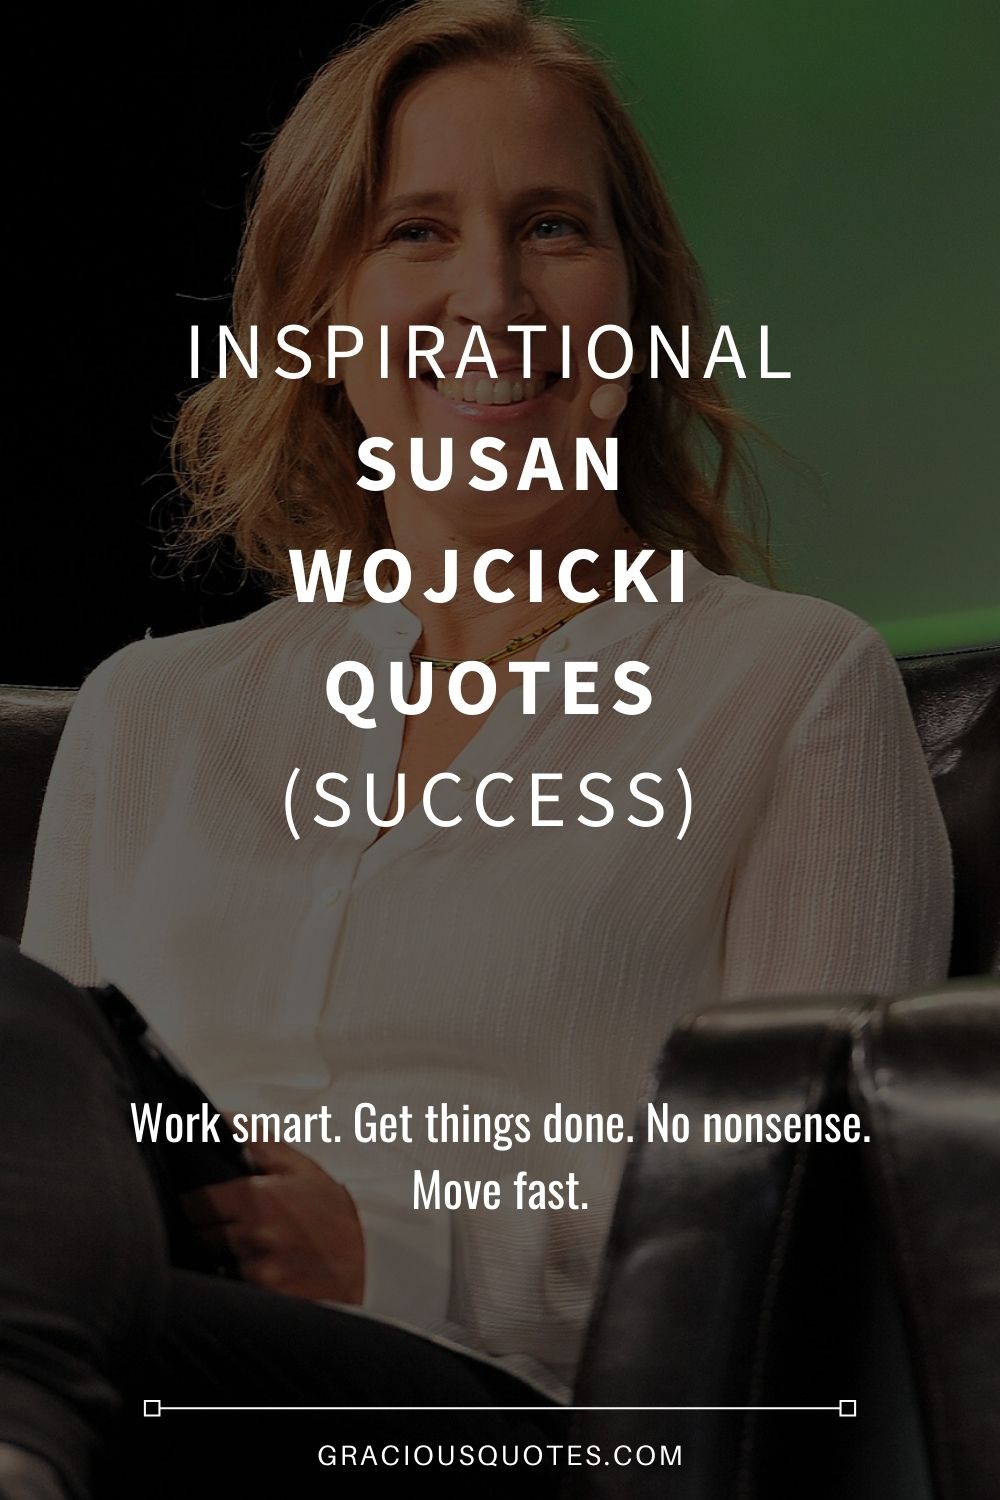 Inspirational Susan Wojcicki Quotes (SUCCESS) - Gracious Quotes